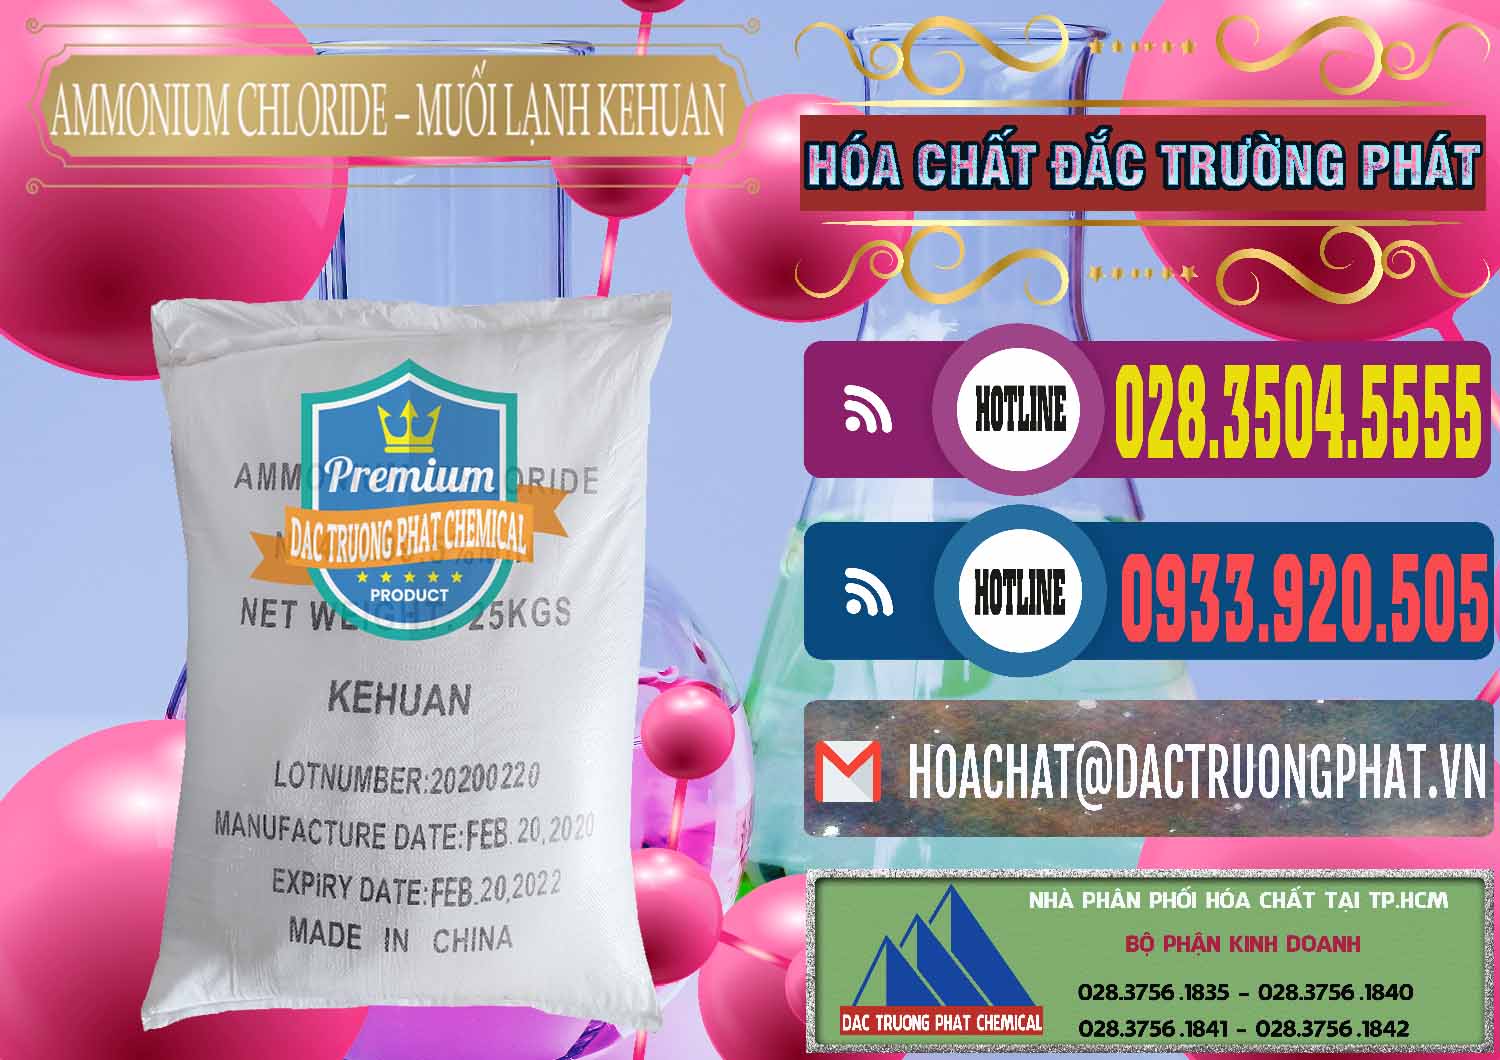 Nơi nhập khẩu & bán Ammonium Chloride – NH4CL Muối Lạnh Kehuan Trung Quốc China - 0022 - Đơn vị cung cấp & phân phối hóa chất tại TP.HCM - muabanhoachat.com.vn